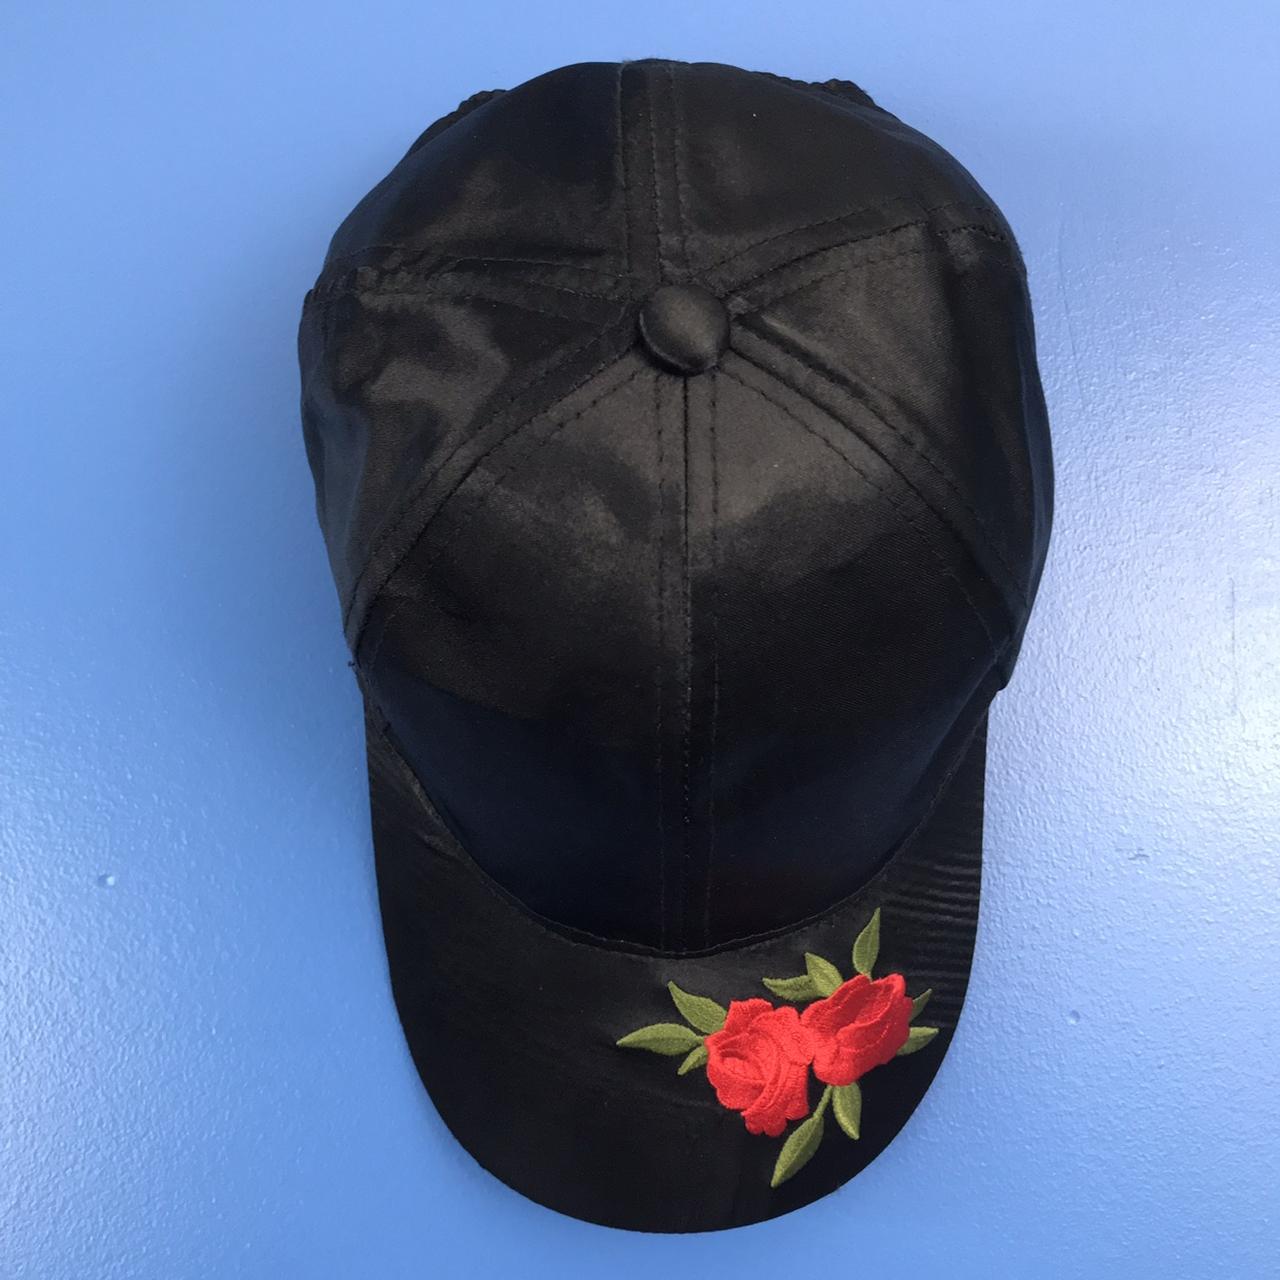 Rue 21 Men's Black and Red Hat | Depop